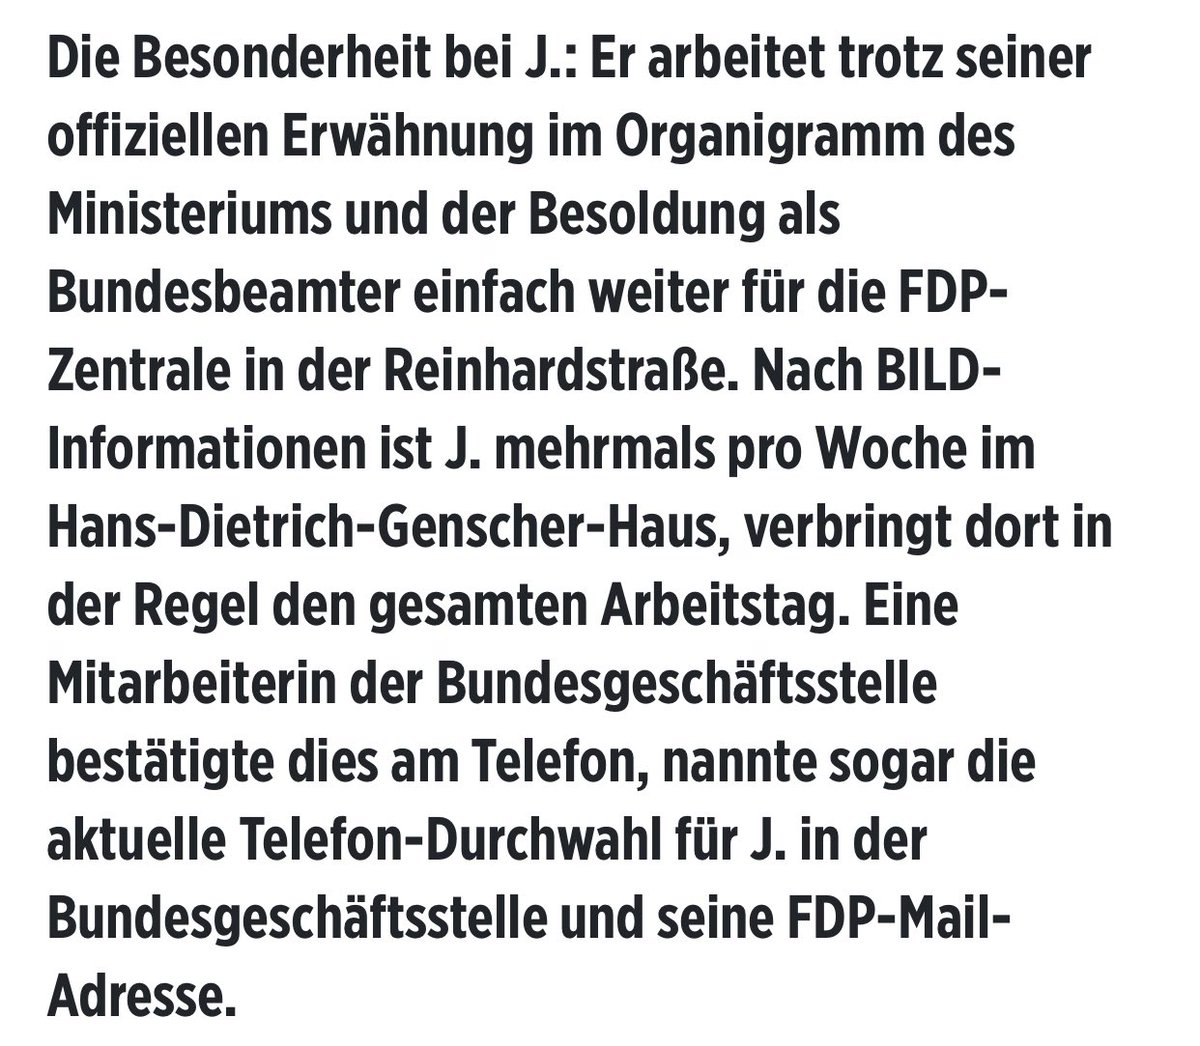 Na schau mal an, der @Wissing macht ein bisschen illegale Parteienfinanzierung und stellt Partei-Leute im Ministerium an, damit die dann in der FDP-Zentrale FDP-Parteiarbeit machen können. Das ist ziemlich dreist und muss Konsequenzen haben. m.bild.de/politik/inland…